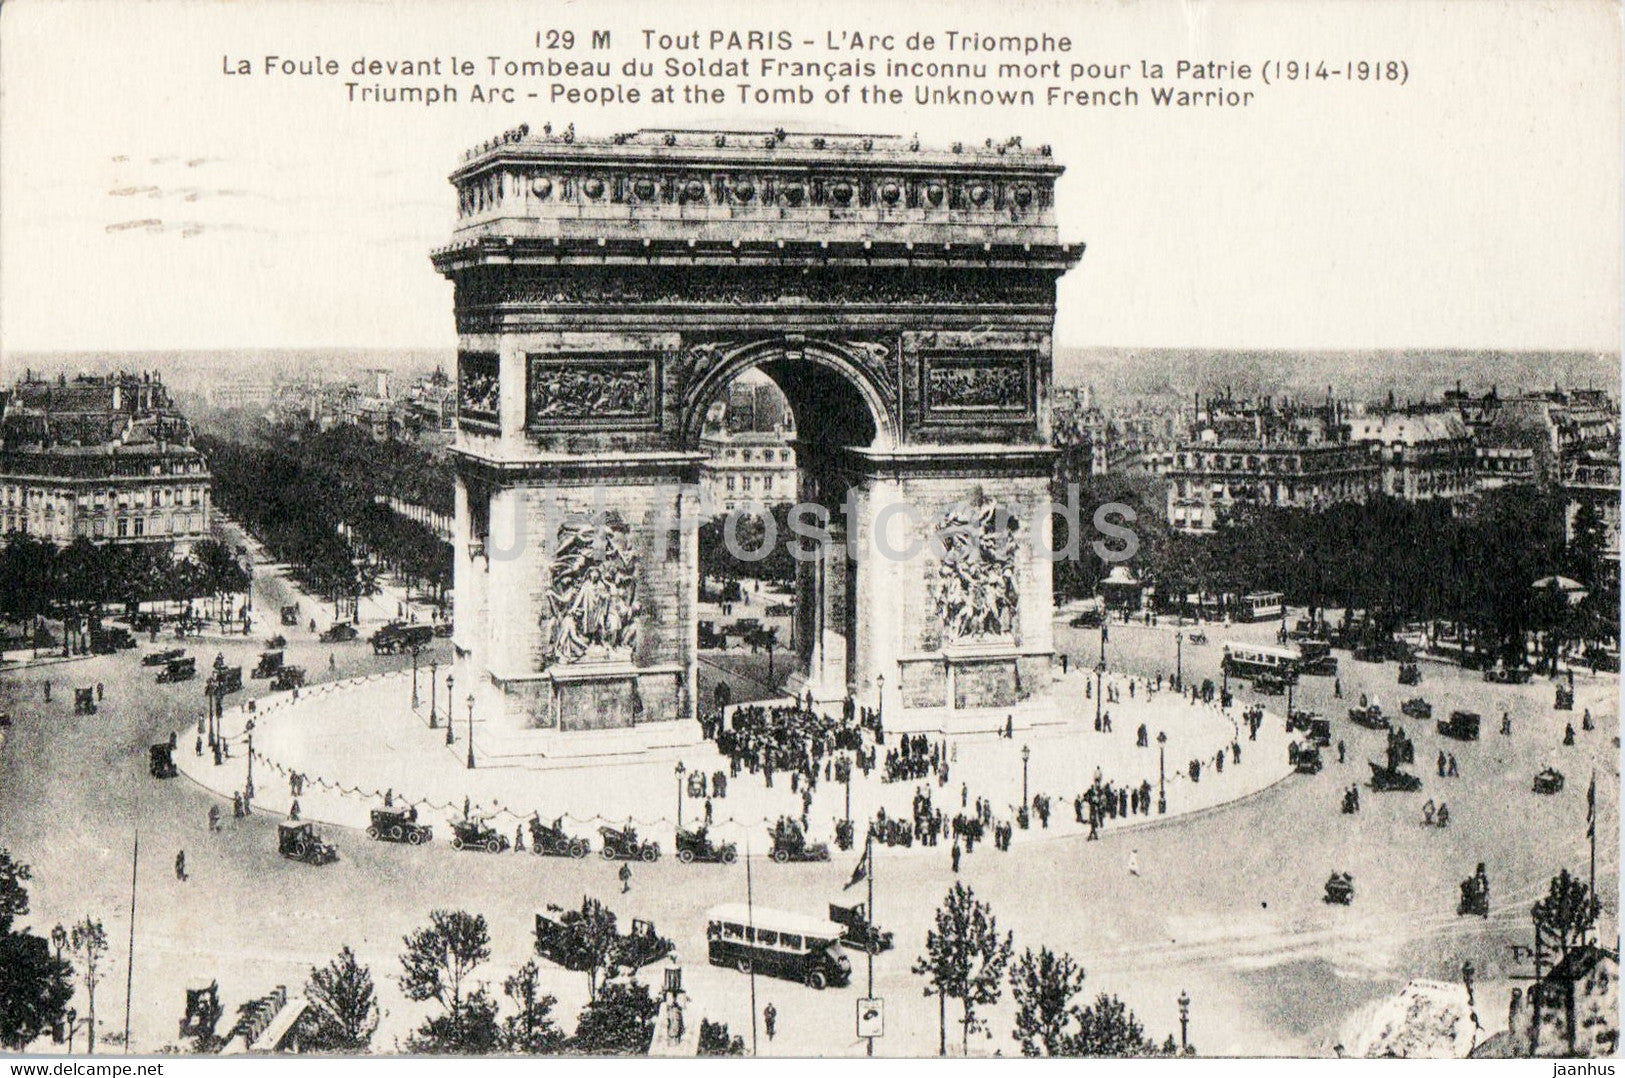 Paris - L'Arc de Triomphe - La Foule devant le Tombeau du Soldat Francais - 129 - old postcard - 1928 - France - used - JH Postcards